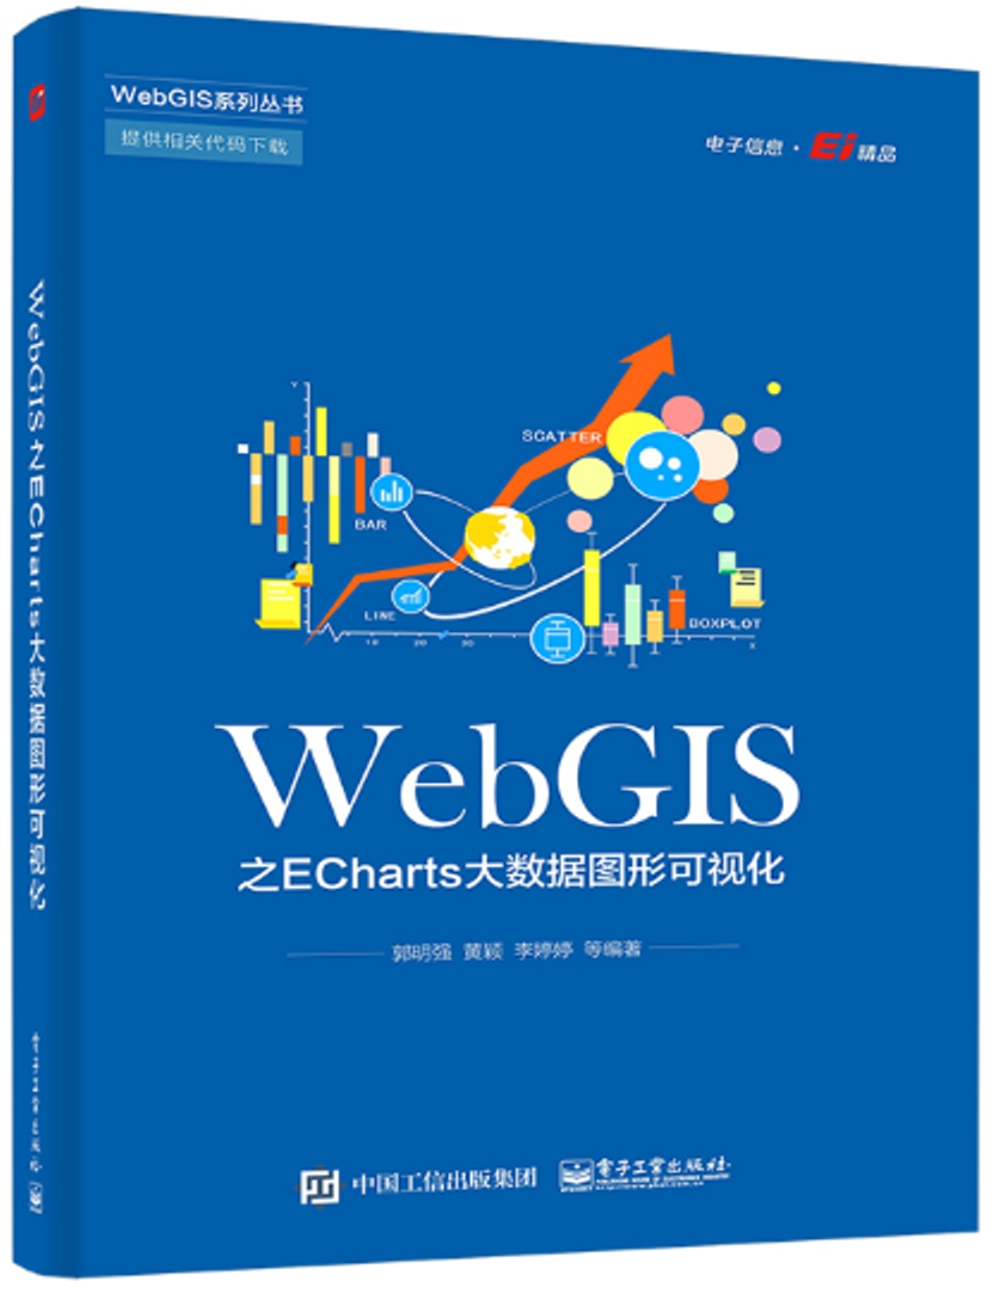 WebGIS之ECharts大數據圖形可視化